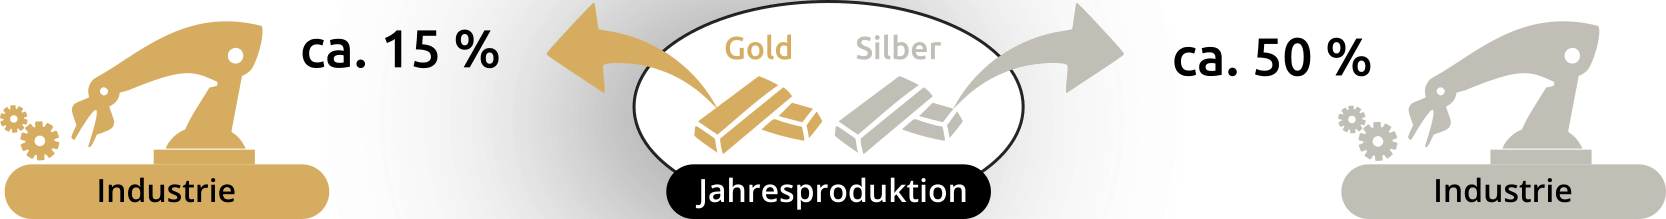 Nachfrage von Gold und Silber in der Industrie